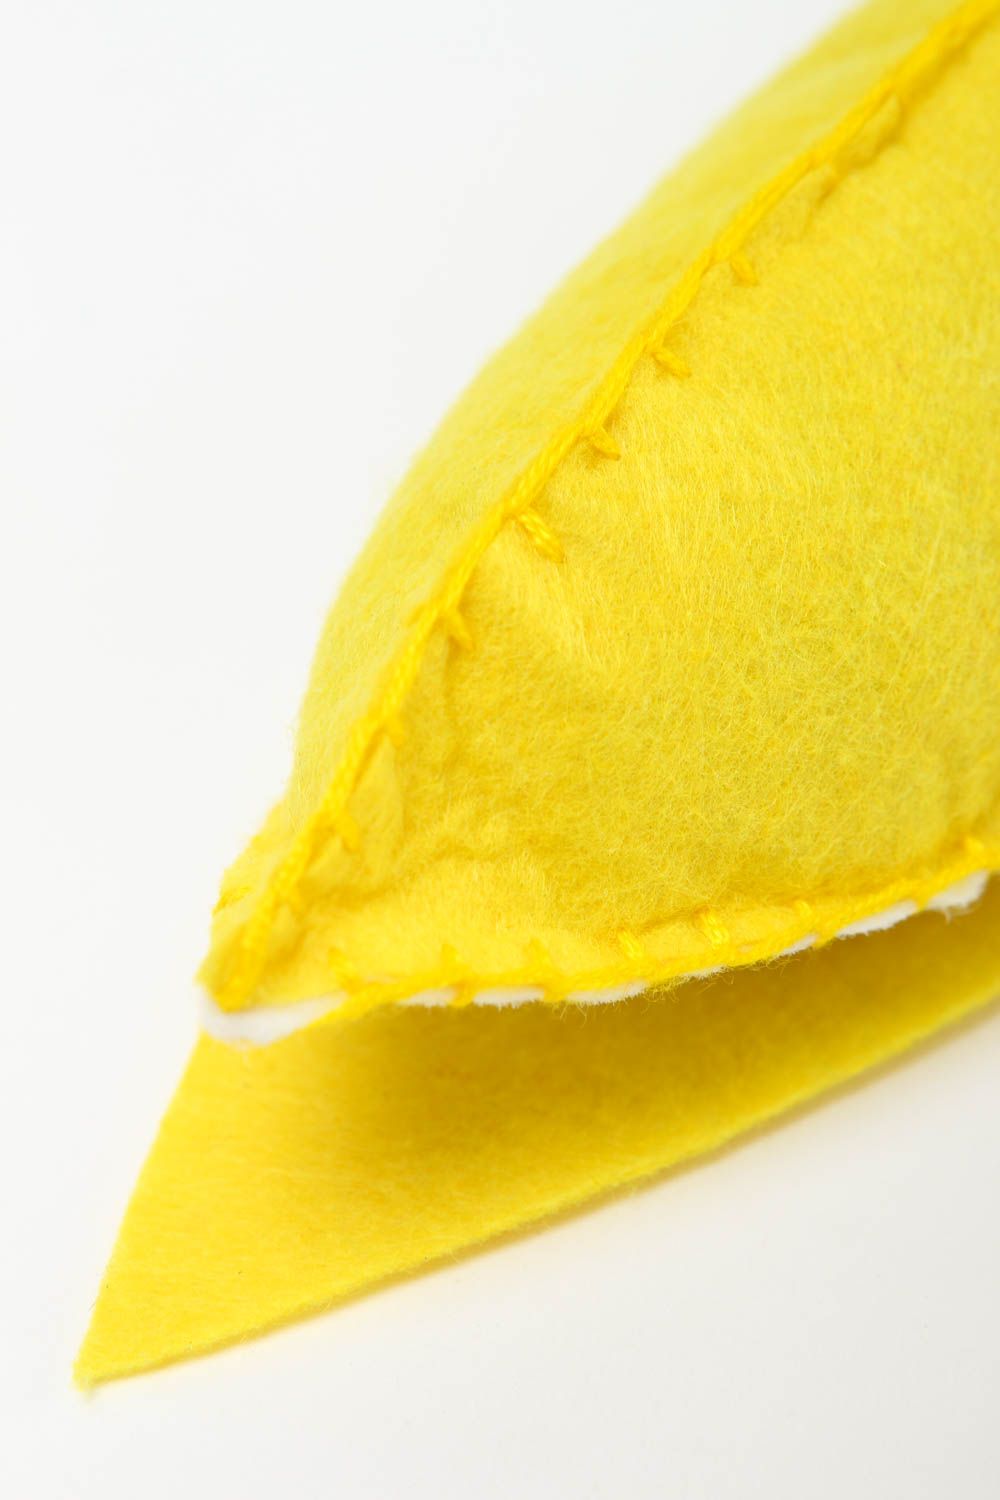 Peluche banane fait main Jouet feutrine jaune original Cadeau pour enfant photo 4